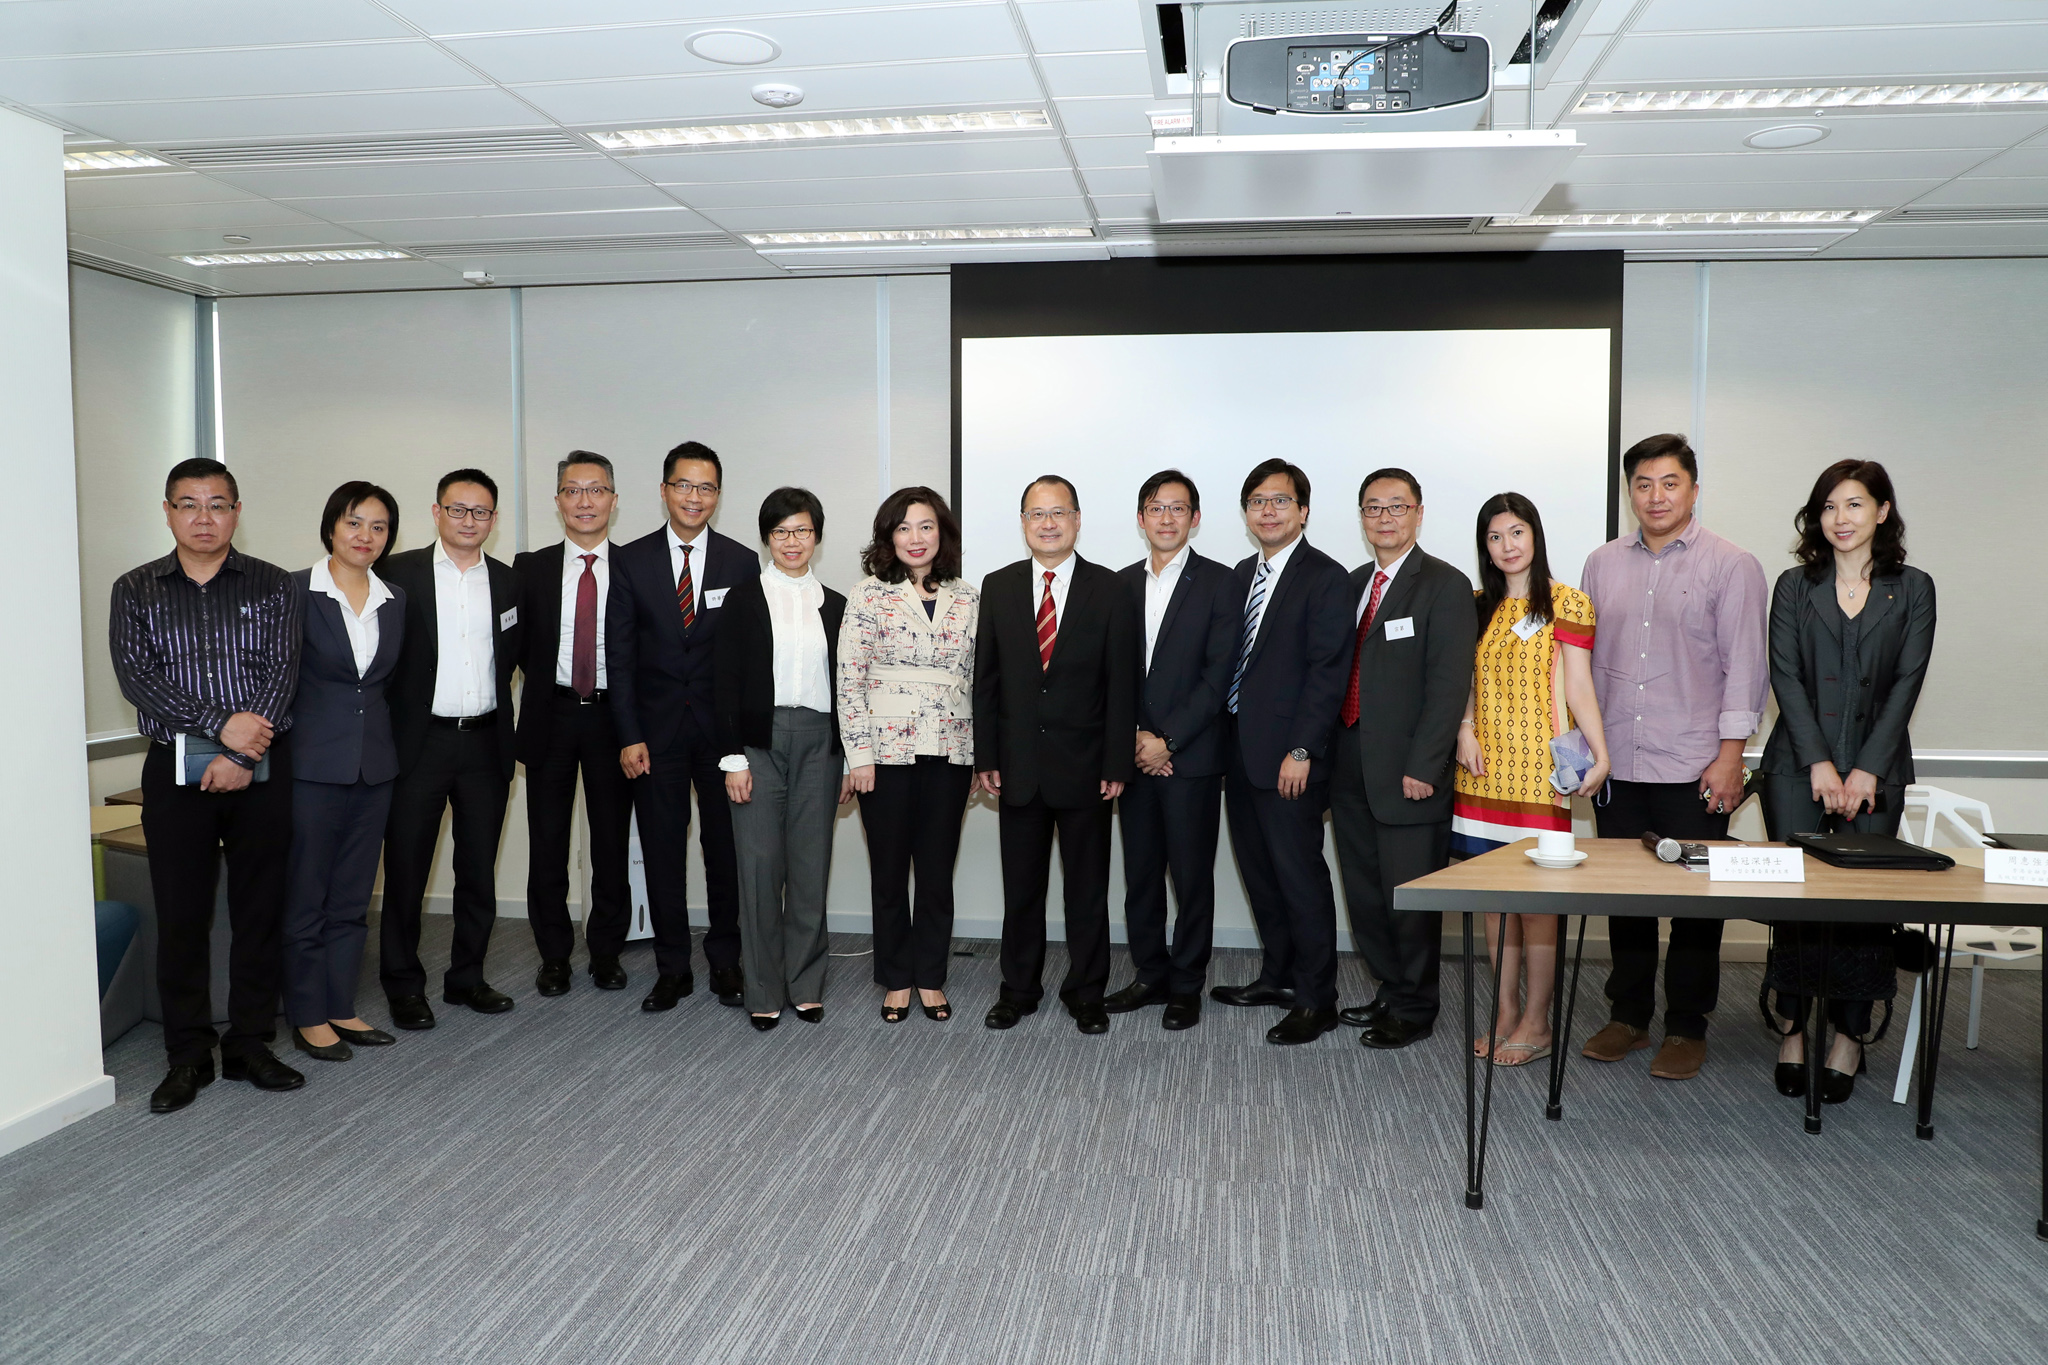 圖   片   26 : 中 小 型 企 業 委 員 會 於 2018 年 11 月 21 日 與 中 小 企 業 組 織 會 面 ， 就 香 港 最 新 的 金 融 科 技 發 展 交 流 意 見 ， 並 邀 請 香 港 金 融 管 理 局 代 表 介 紹 最 新 推 出 的 金 融 科 技 措 施 ， 包 括 「 轉 數 快 」 、 「 虛 擬 銀 行 」 和 「 共 用 二 維 碼 」 。 